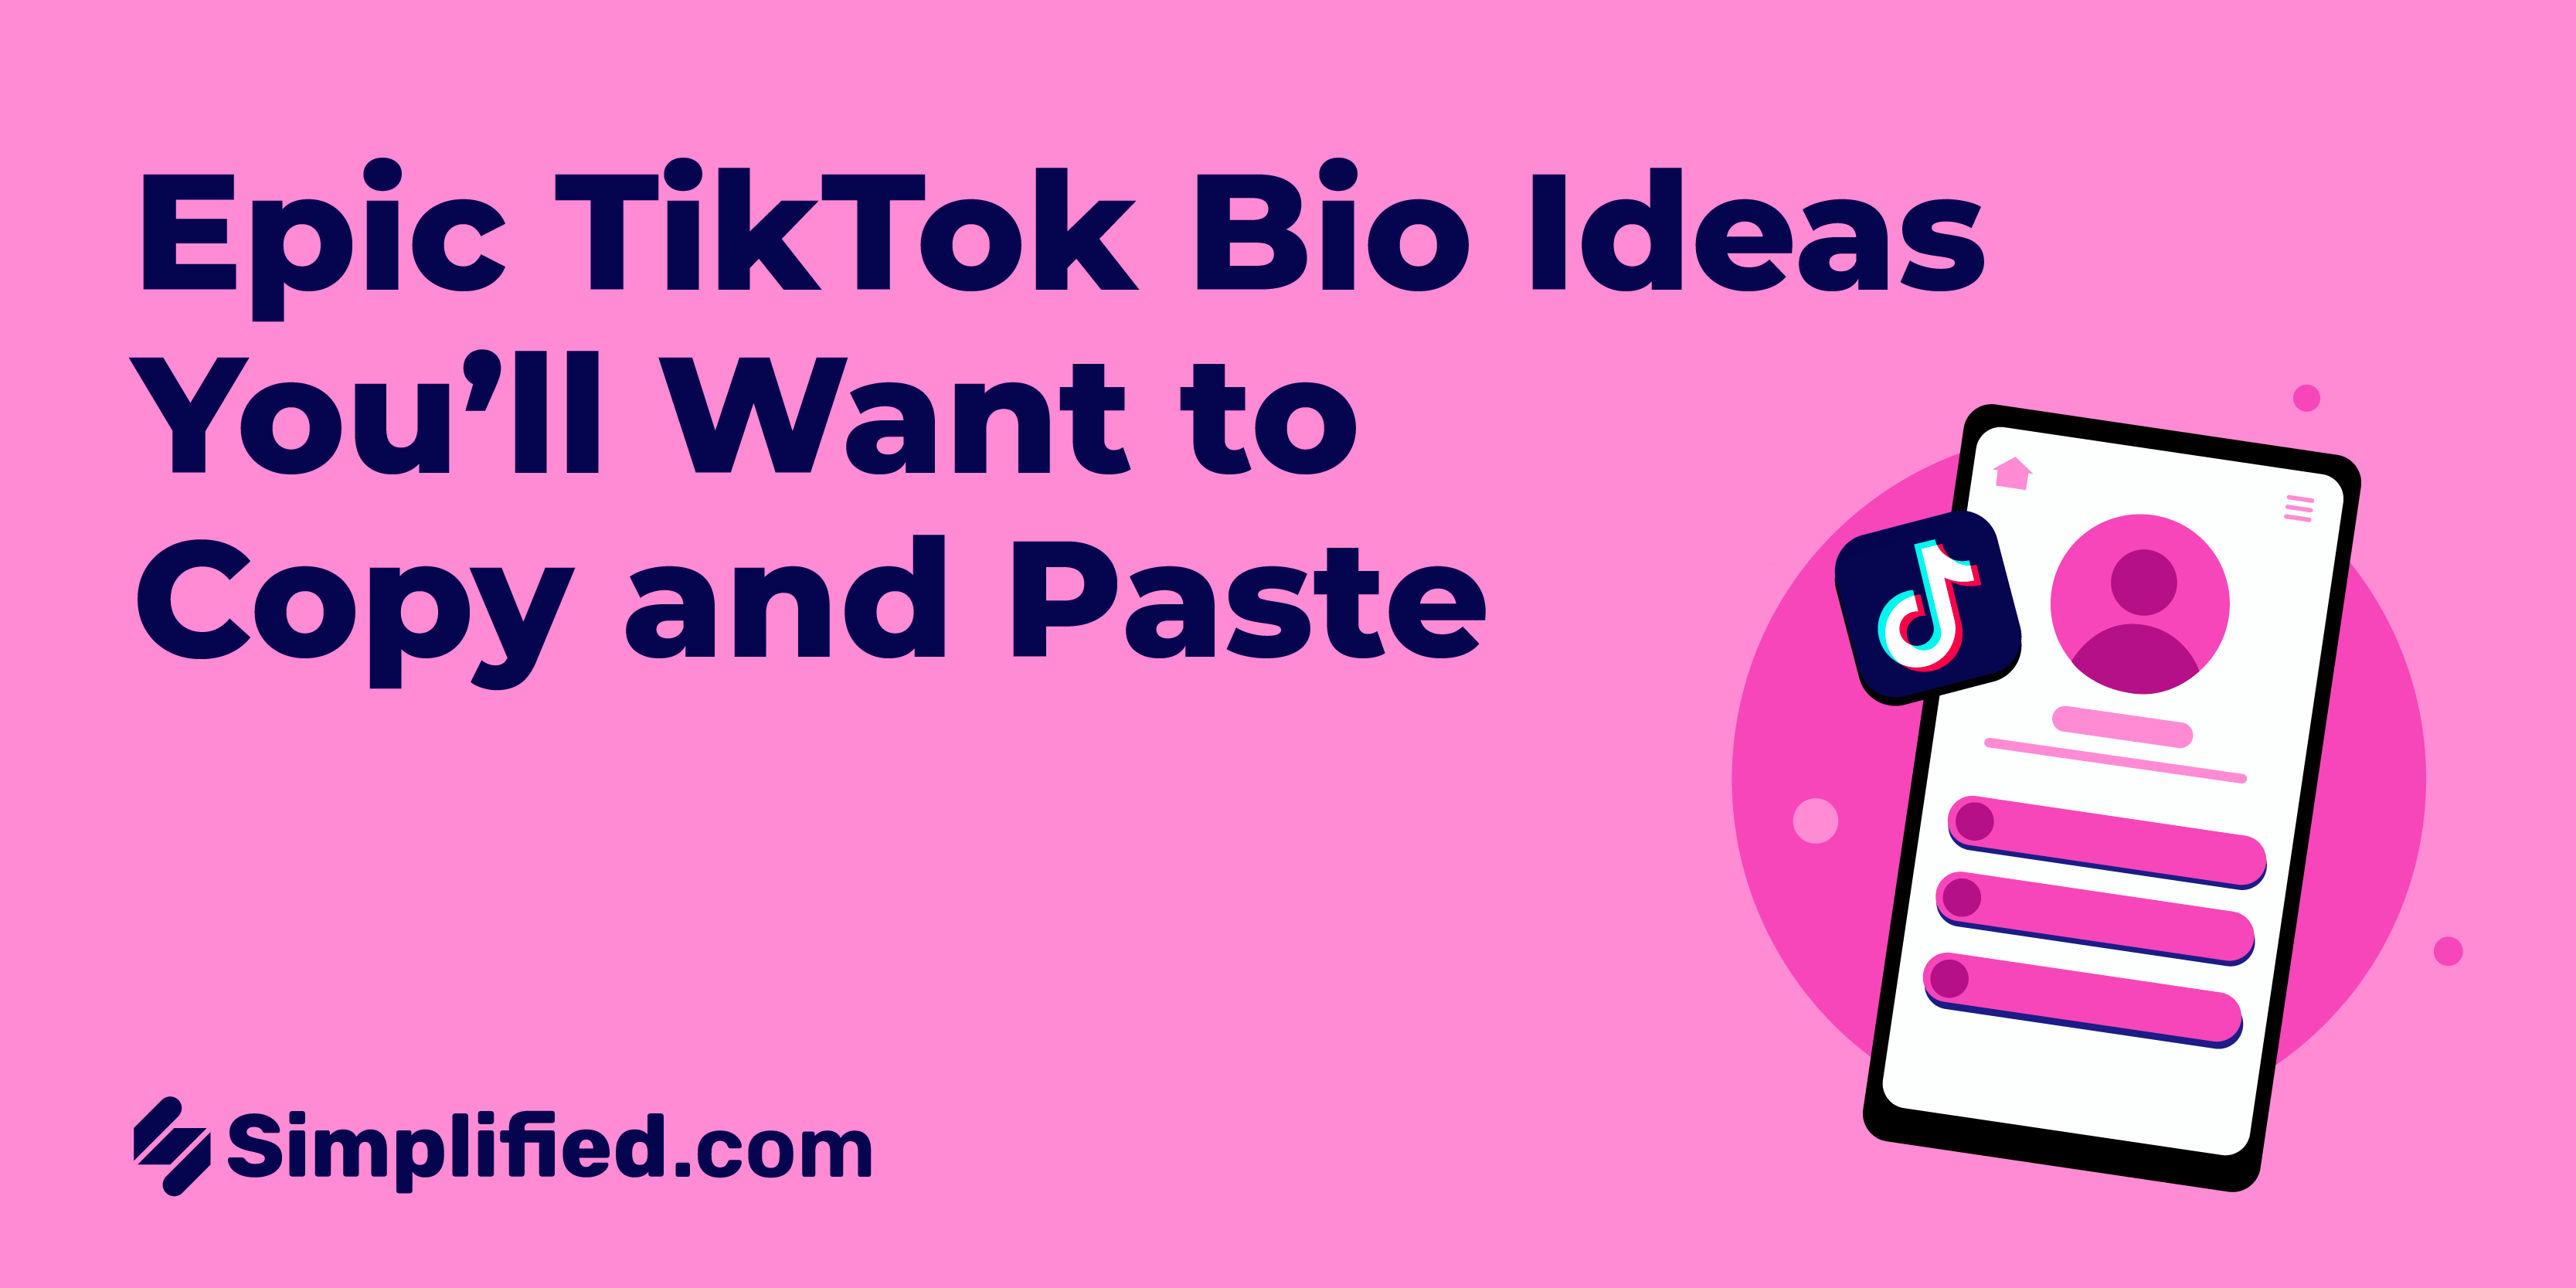 Epic TikTok Bio Ideas